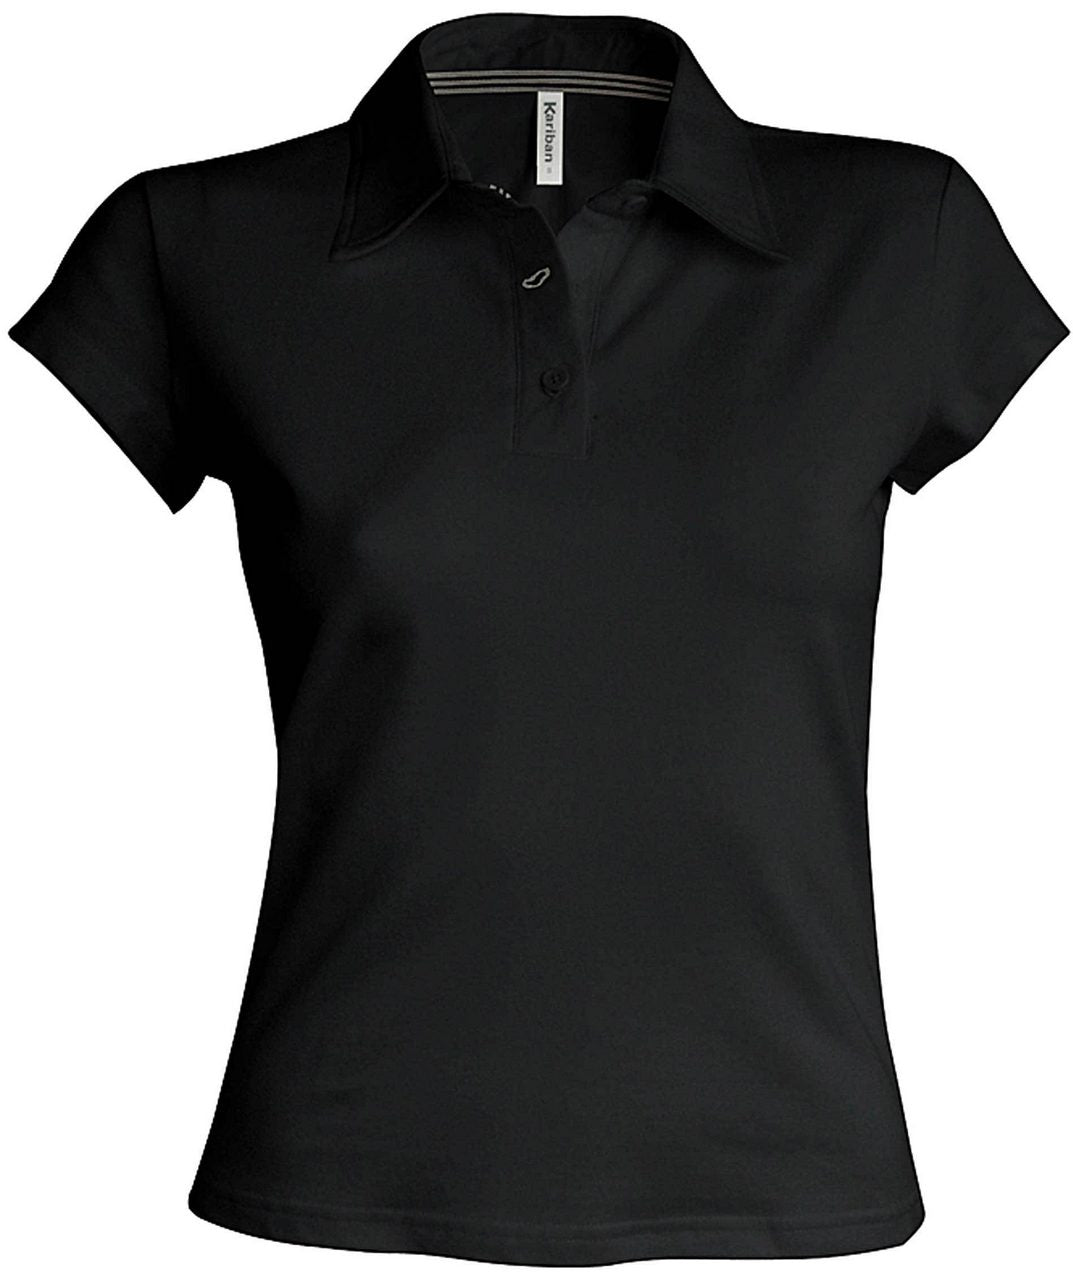 KIM - Tricou Polo pentru femei Diferite Culori/Marimi B347